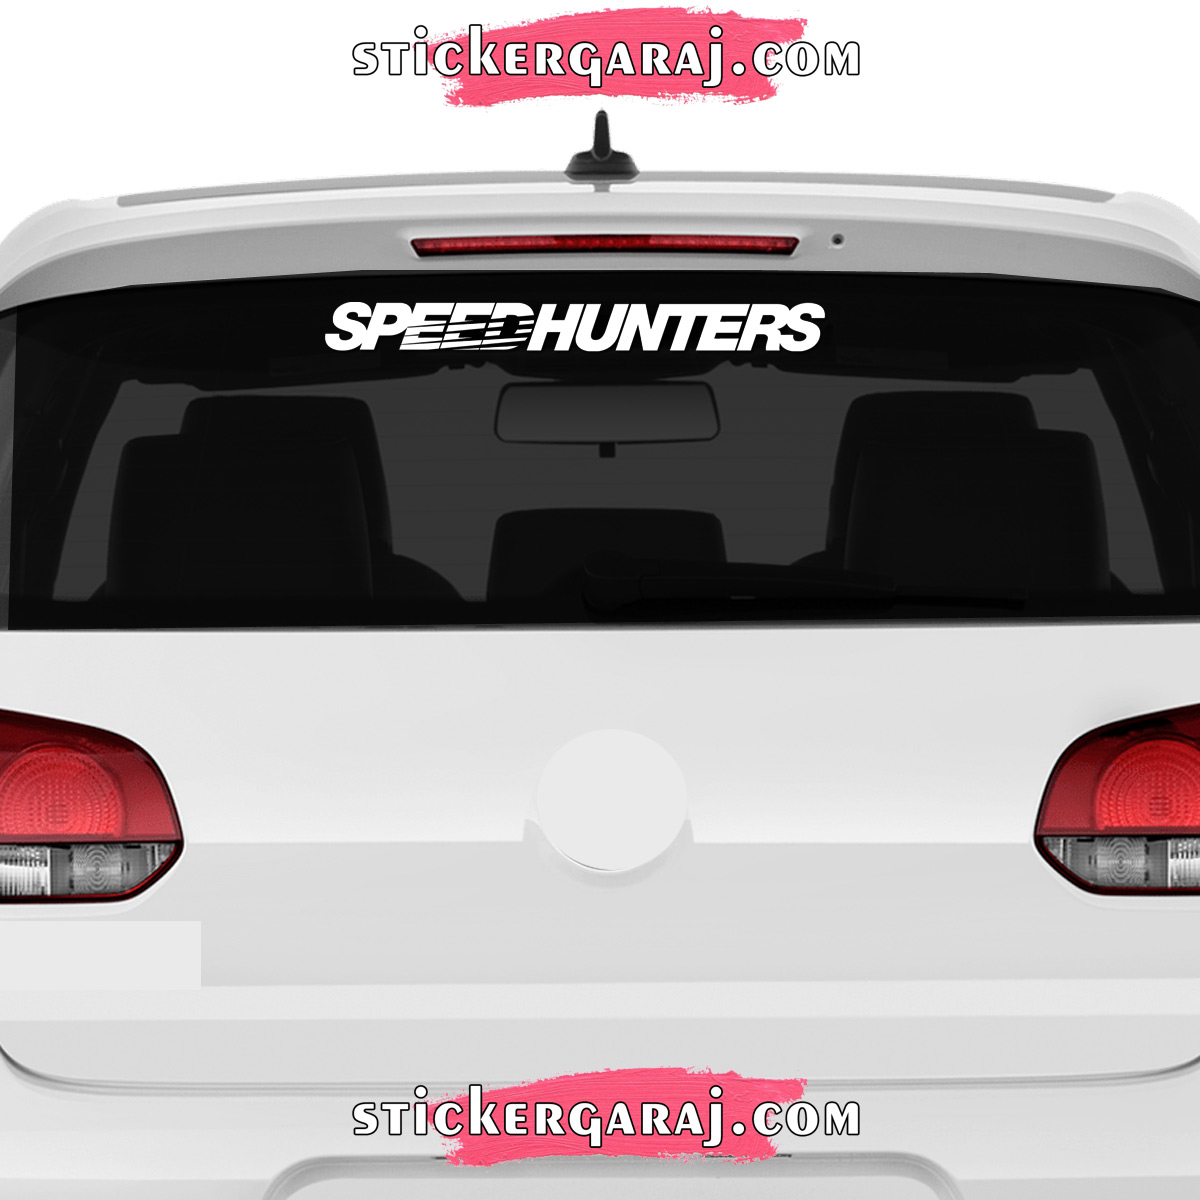 Nissan cam sticker - Nissan cam sticker - speedhunters